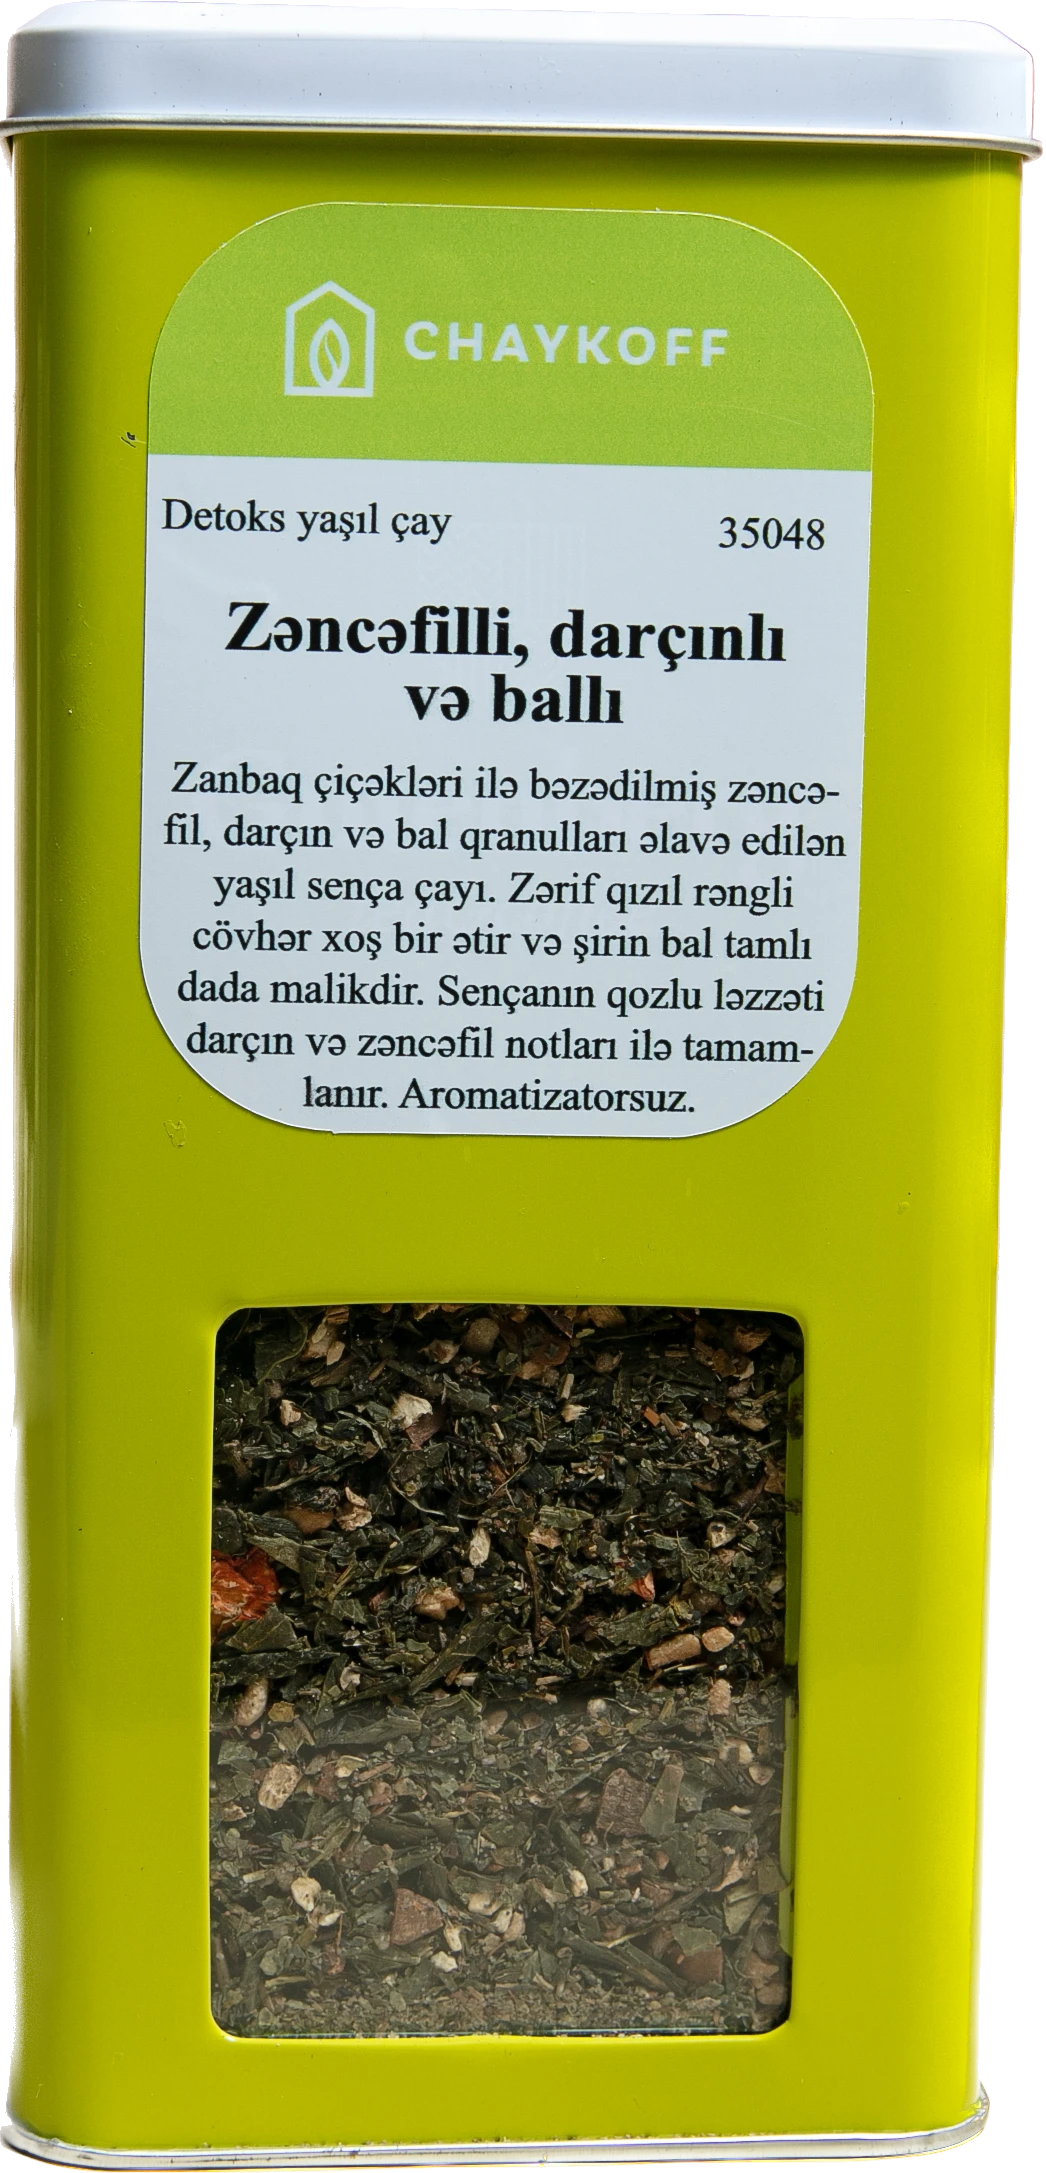 Zəncəfilli, Darçinli Və Balli Detoks Yaşil Çay (100 qr)